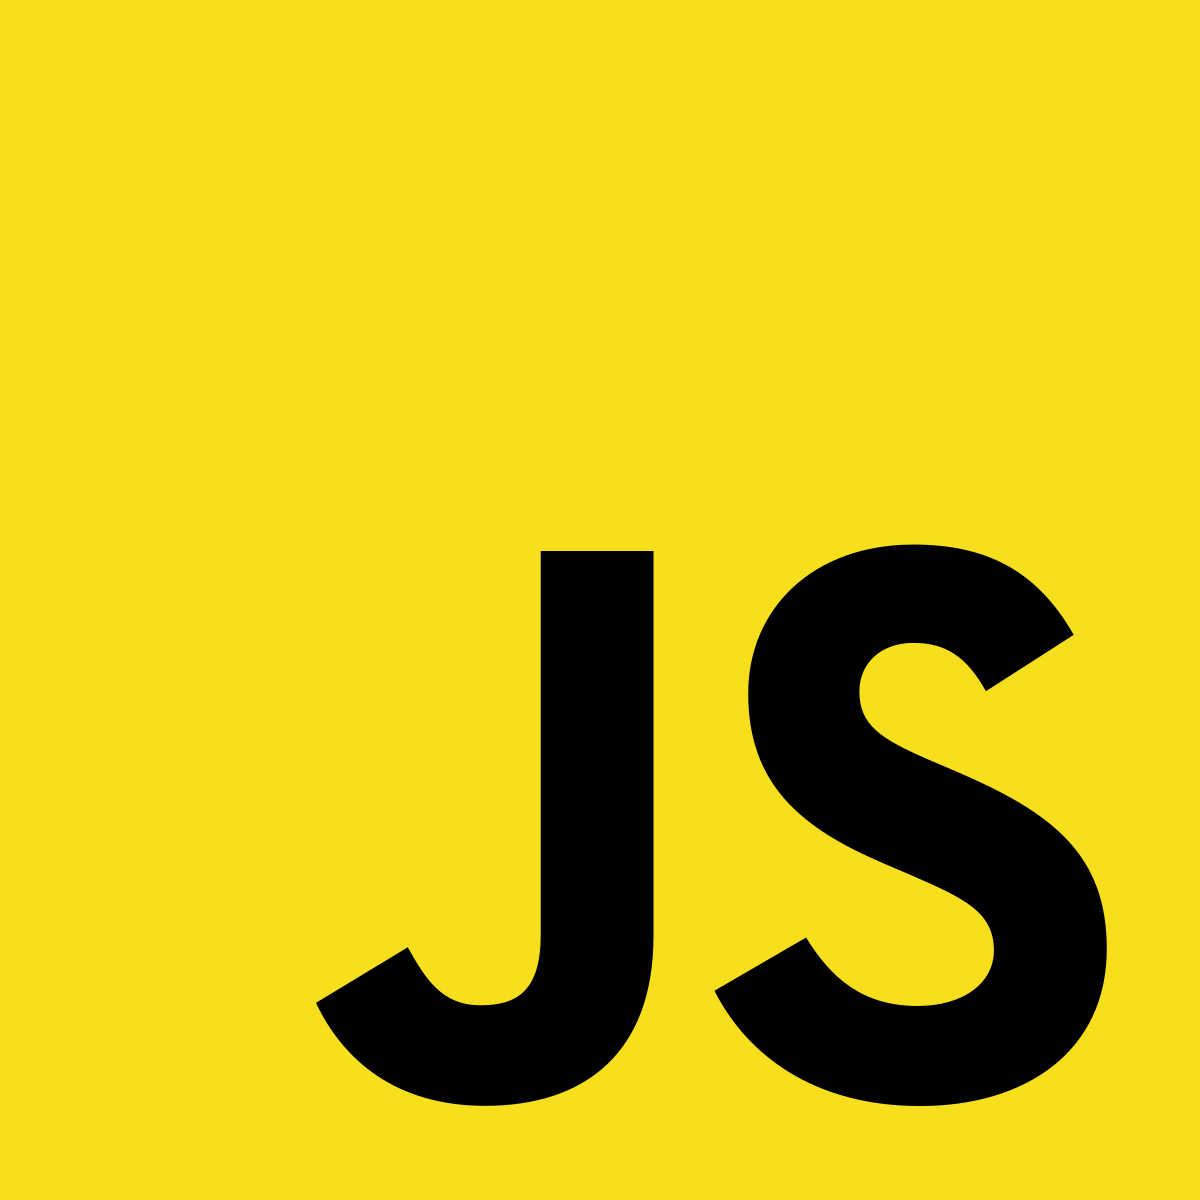 JS image